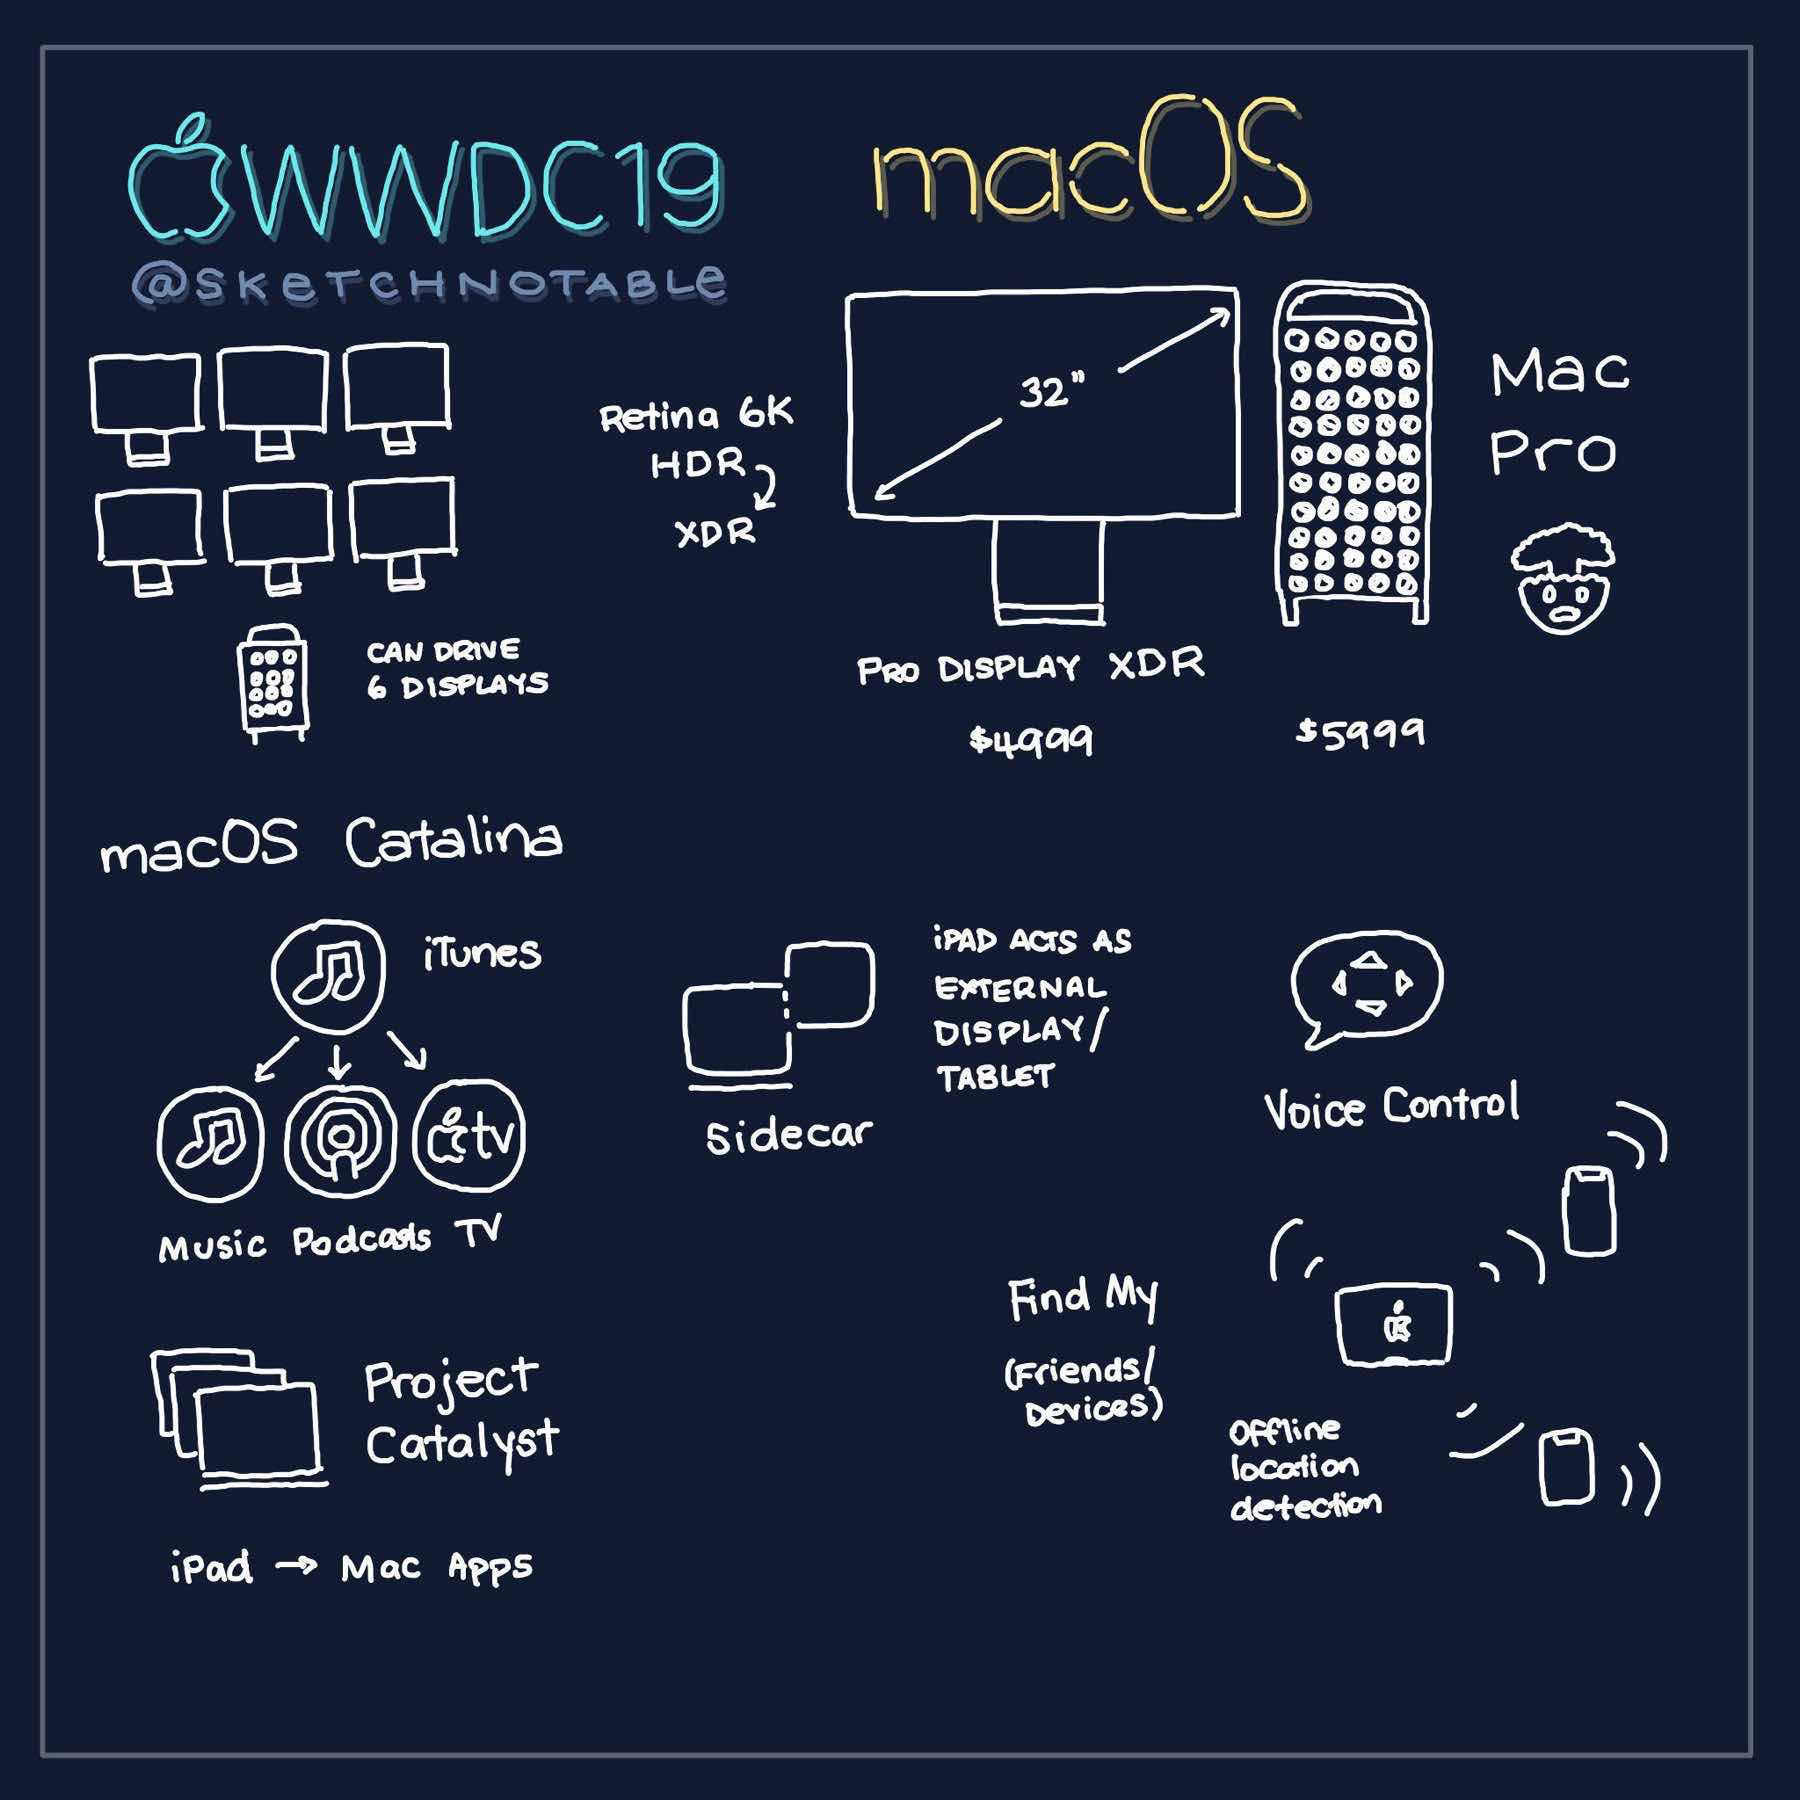 WWDC 2019 Sketchnote